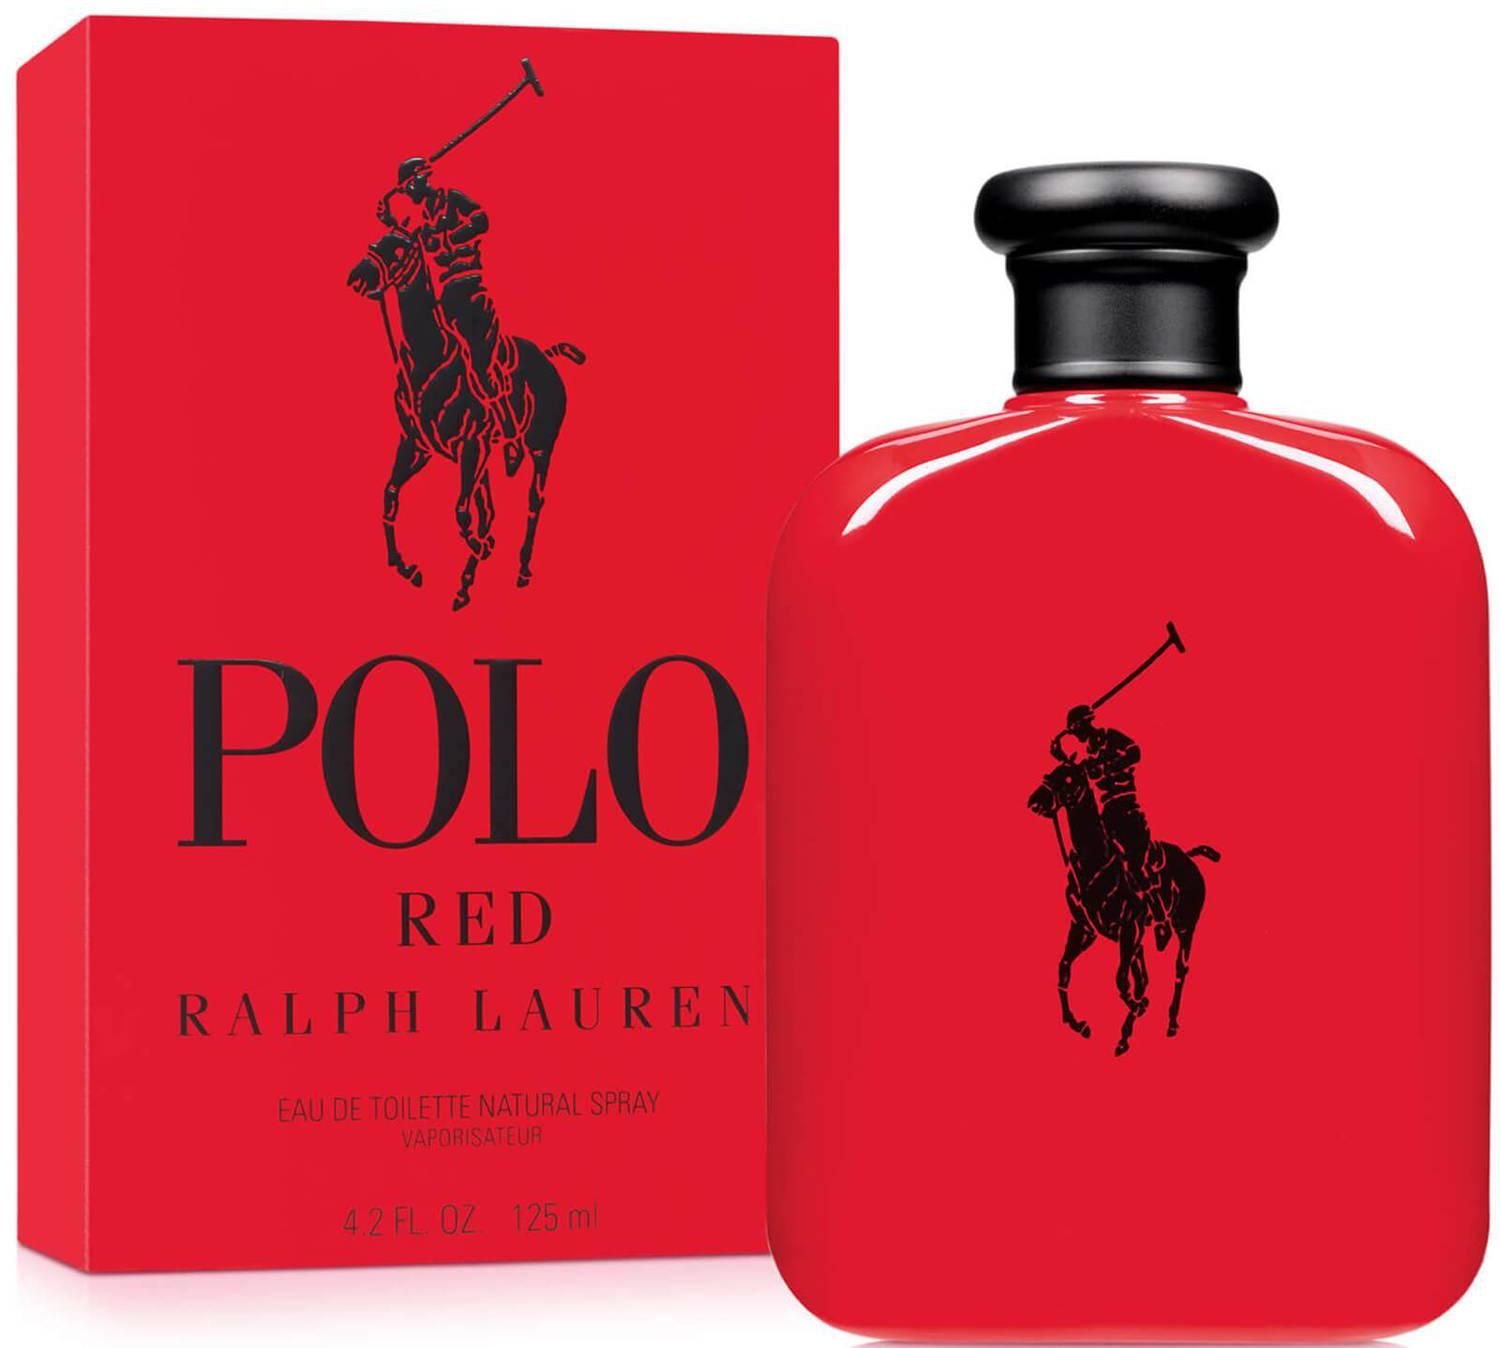 Ralph Lauren Polo Red Eau de Toilette - 125ml